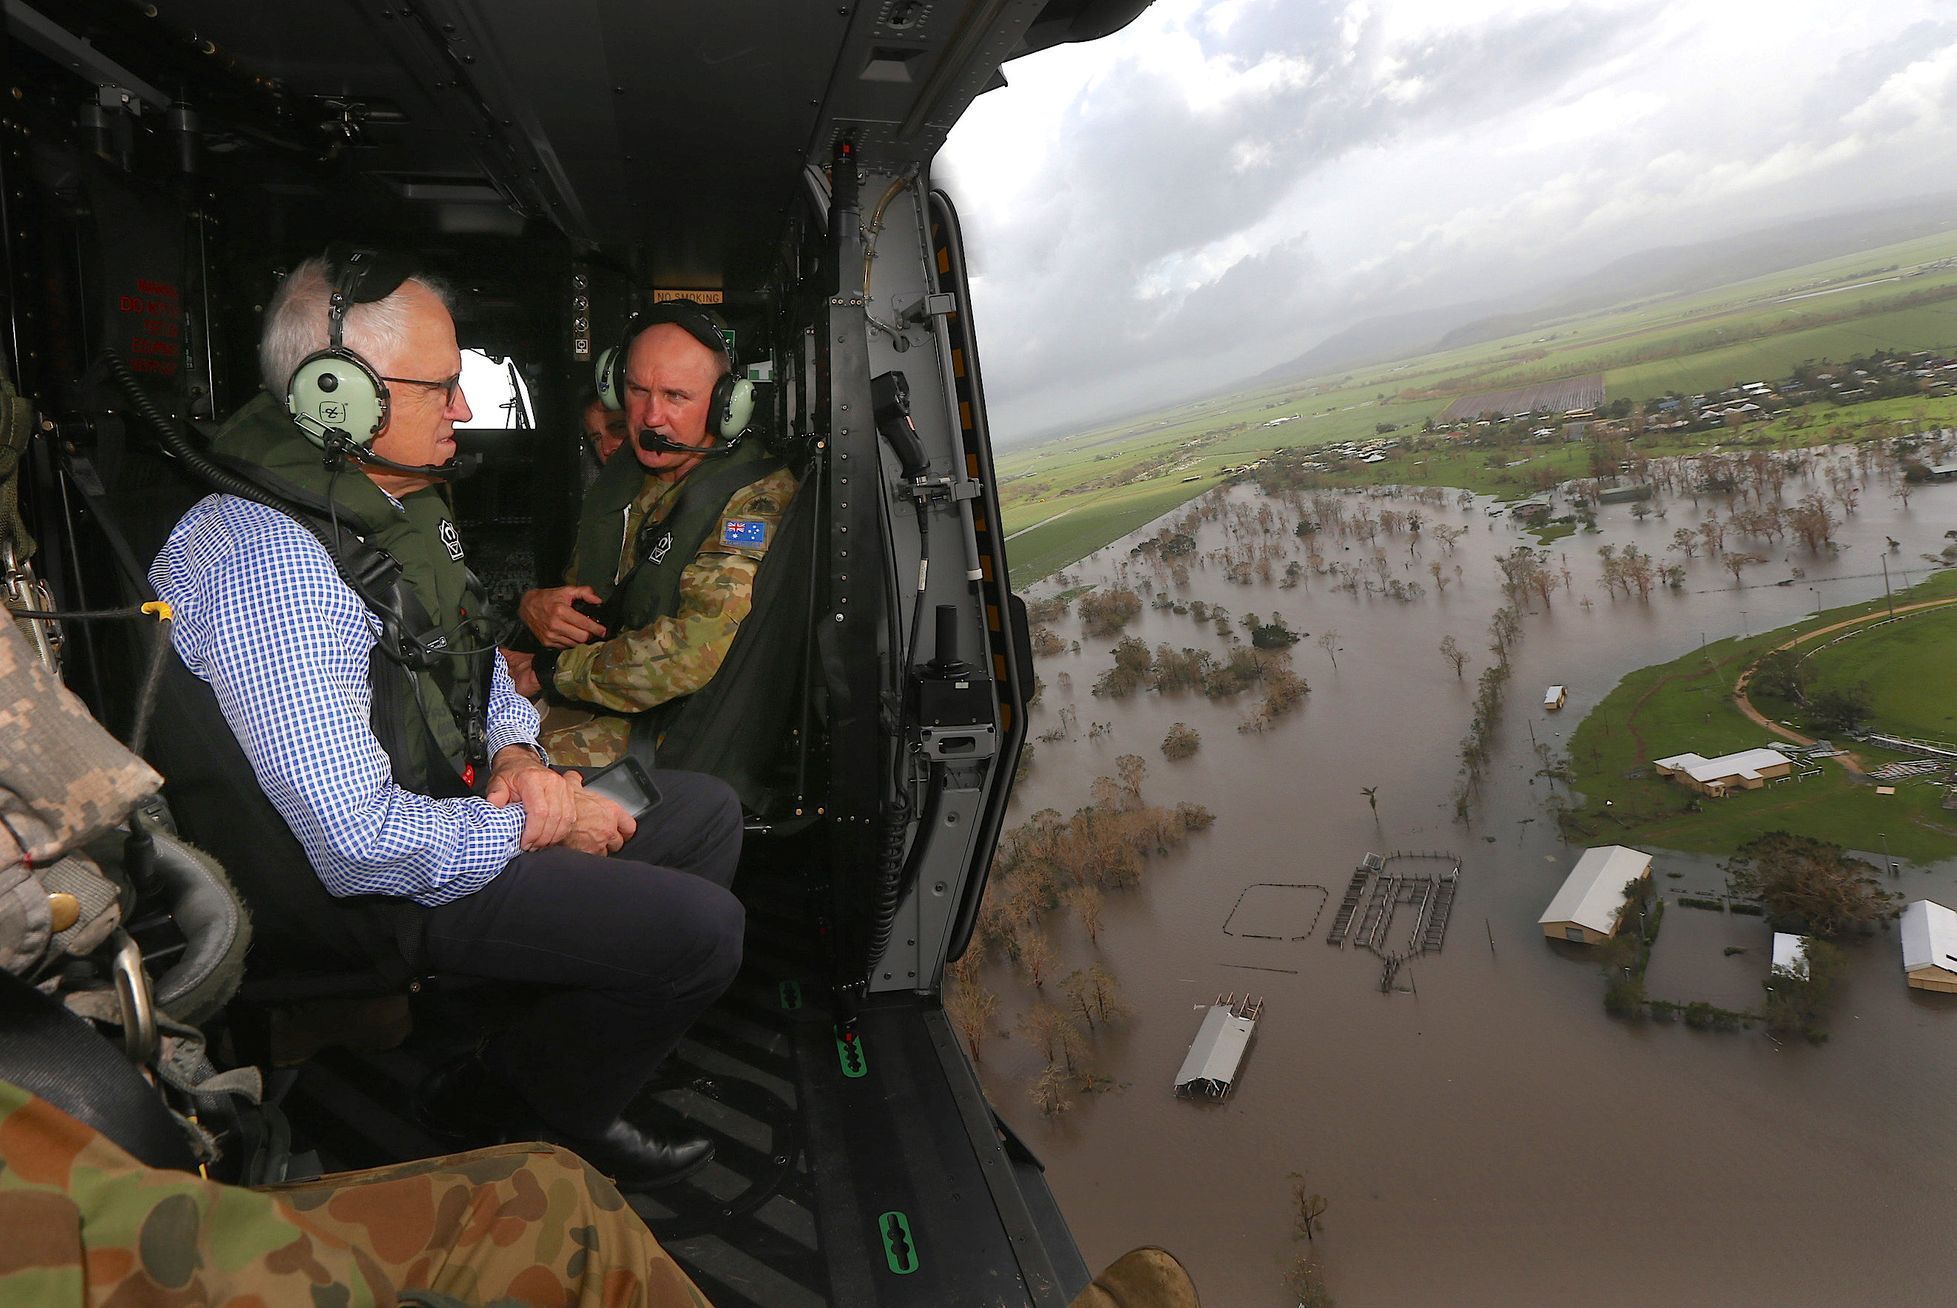 Austrálie se potýká se záplavami, které způsobil cyklon Debbie